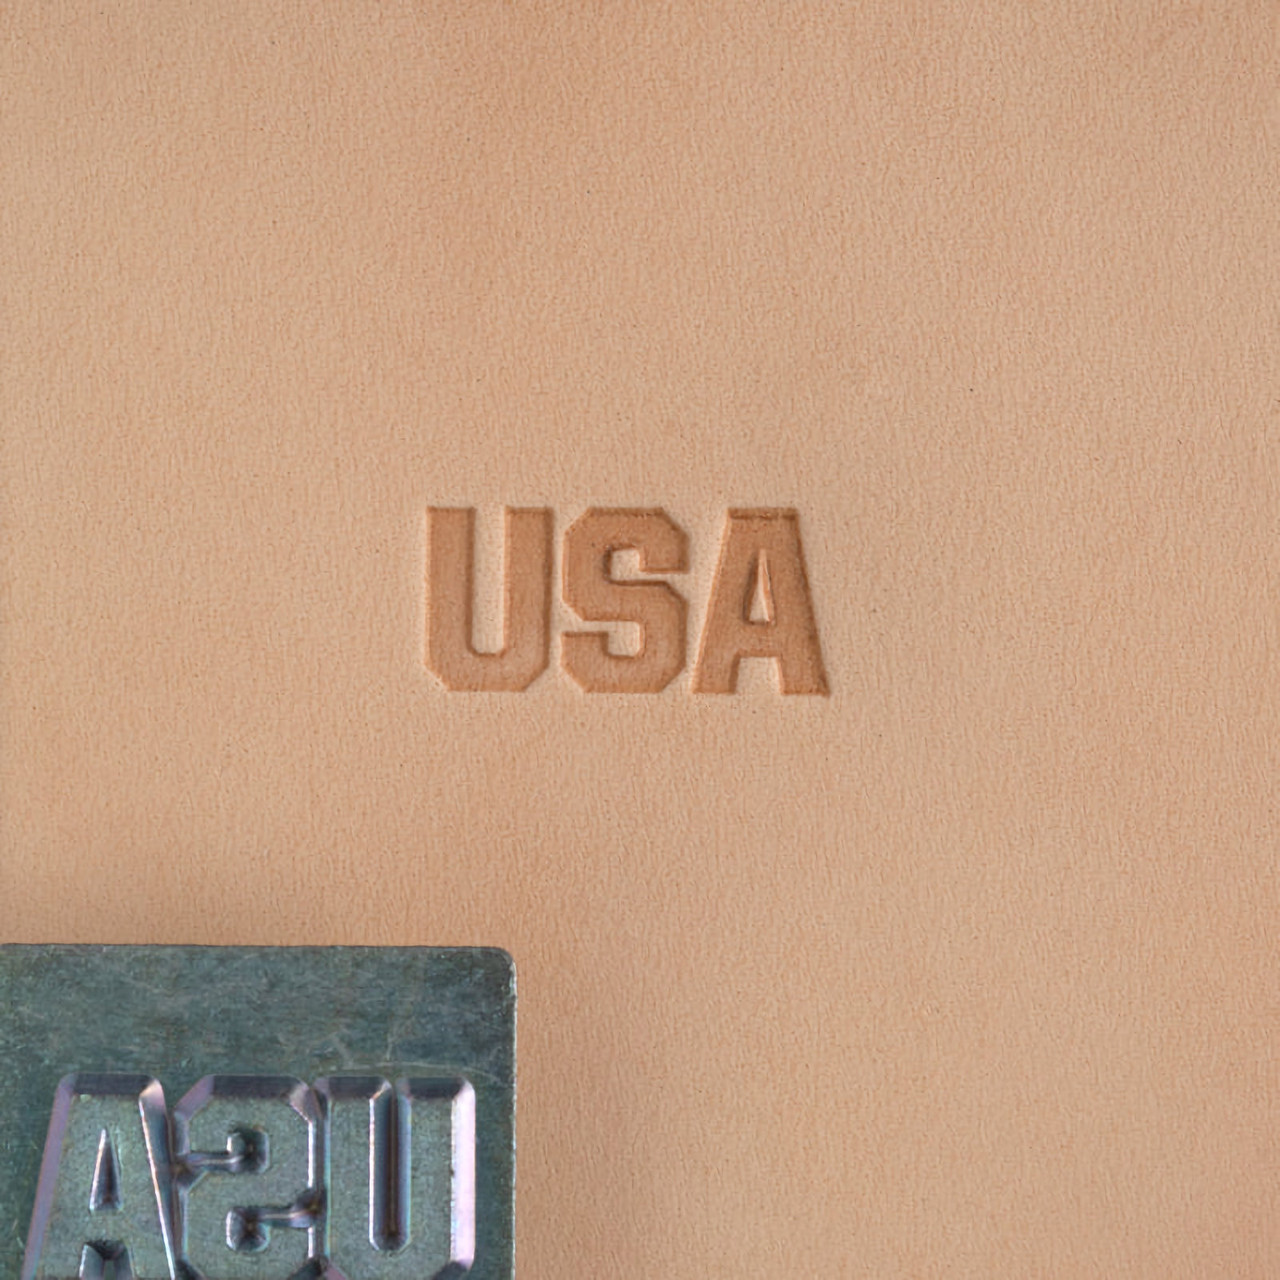 USA Stamp with stamp.